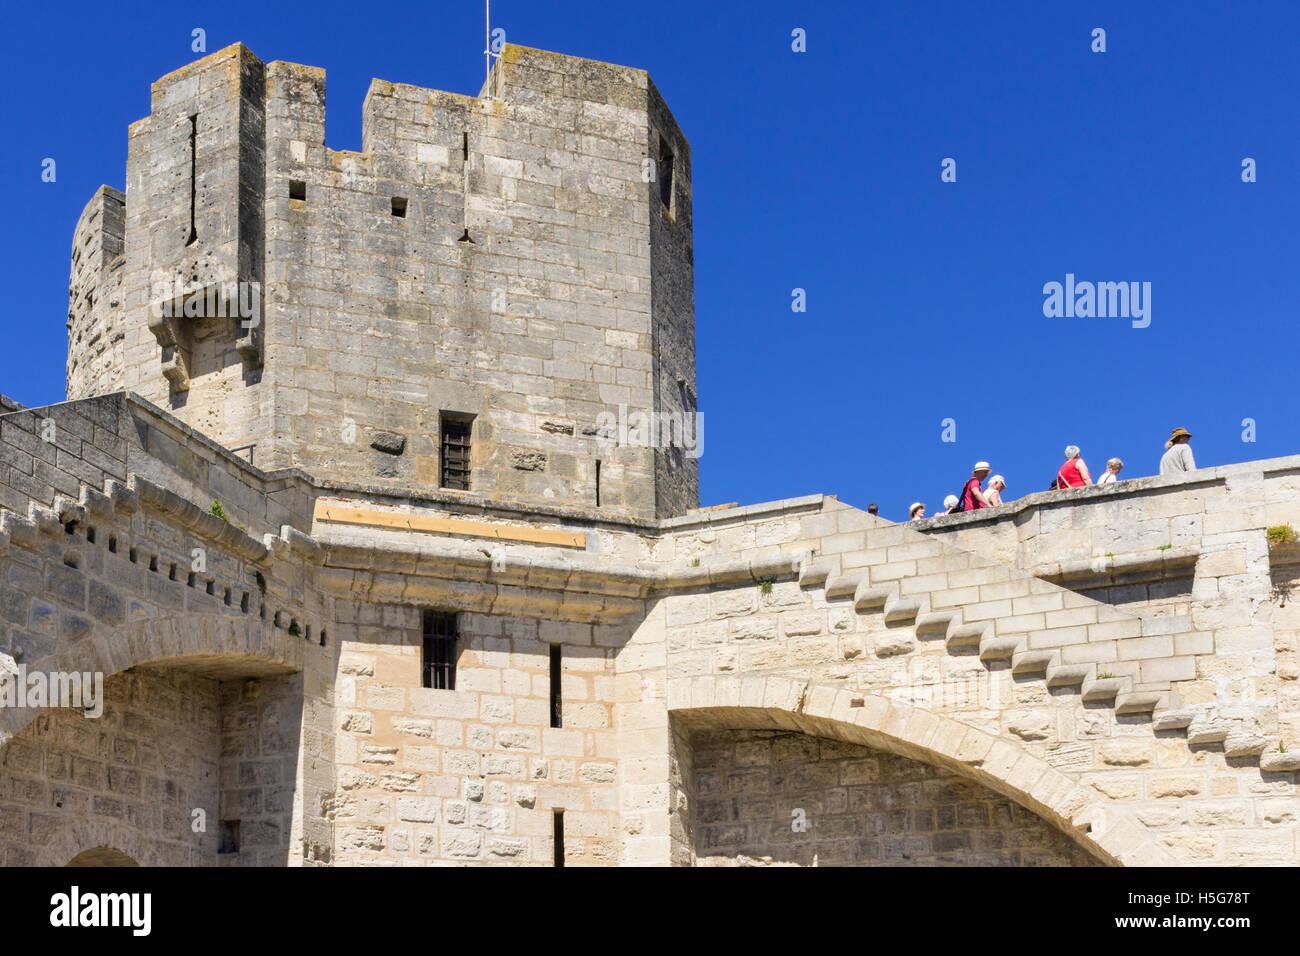 Les touristes à pied de l'enceinte médiévale d'Aigues-Mortes, France Banque D'Images